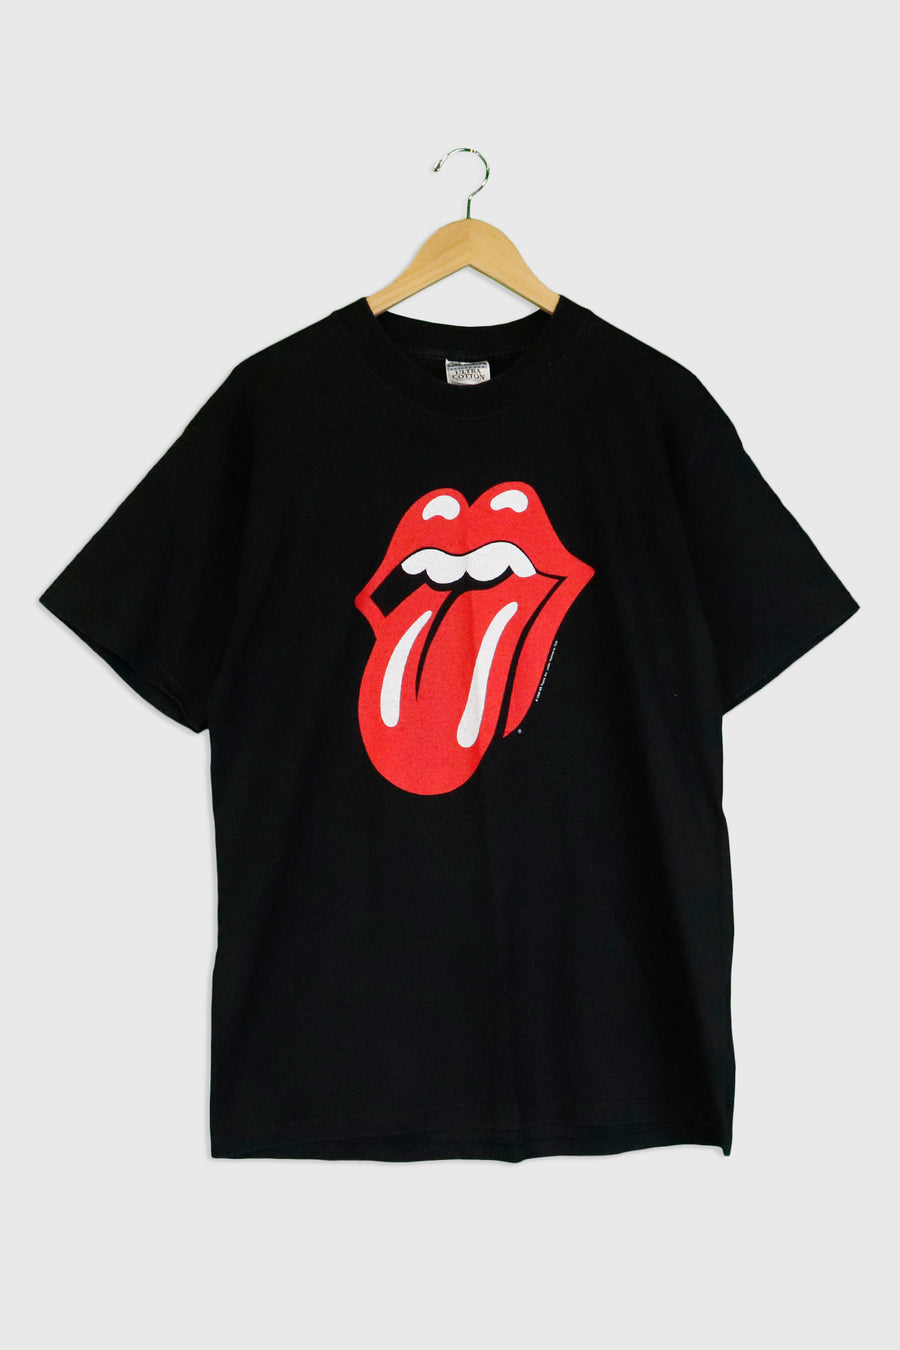 Vintage 1999 Rolling Stones No Security Tour T Shirt Sz L